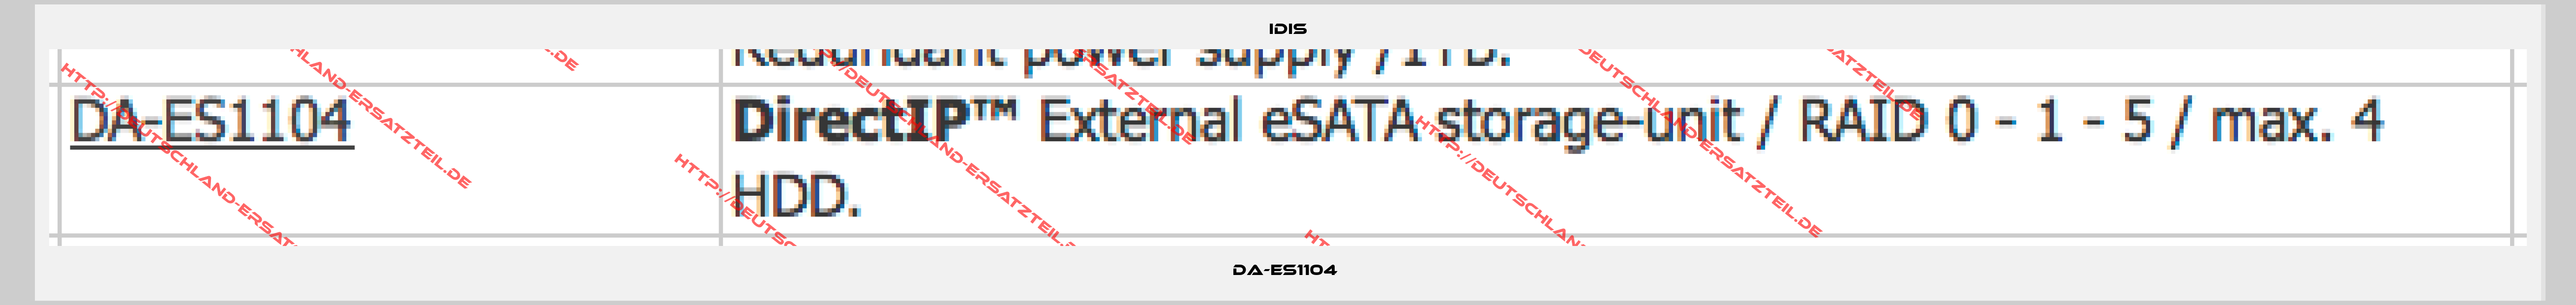 IDIS-DA-ES1104 